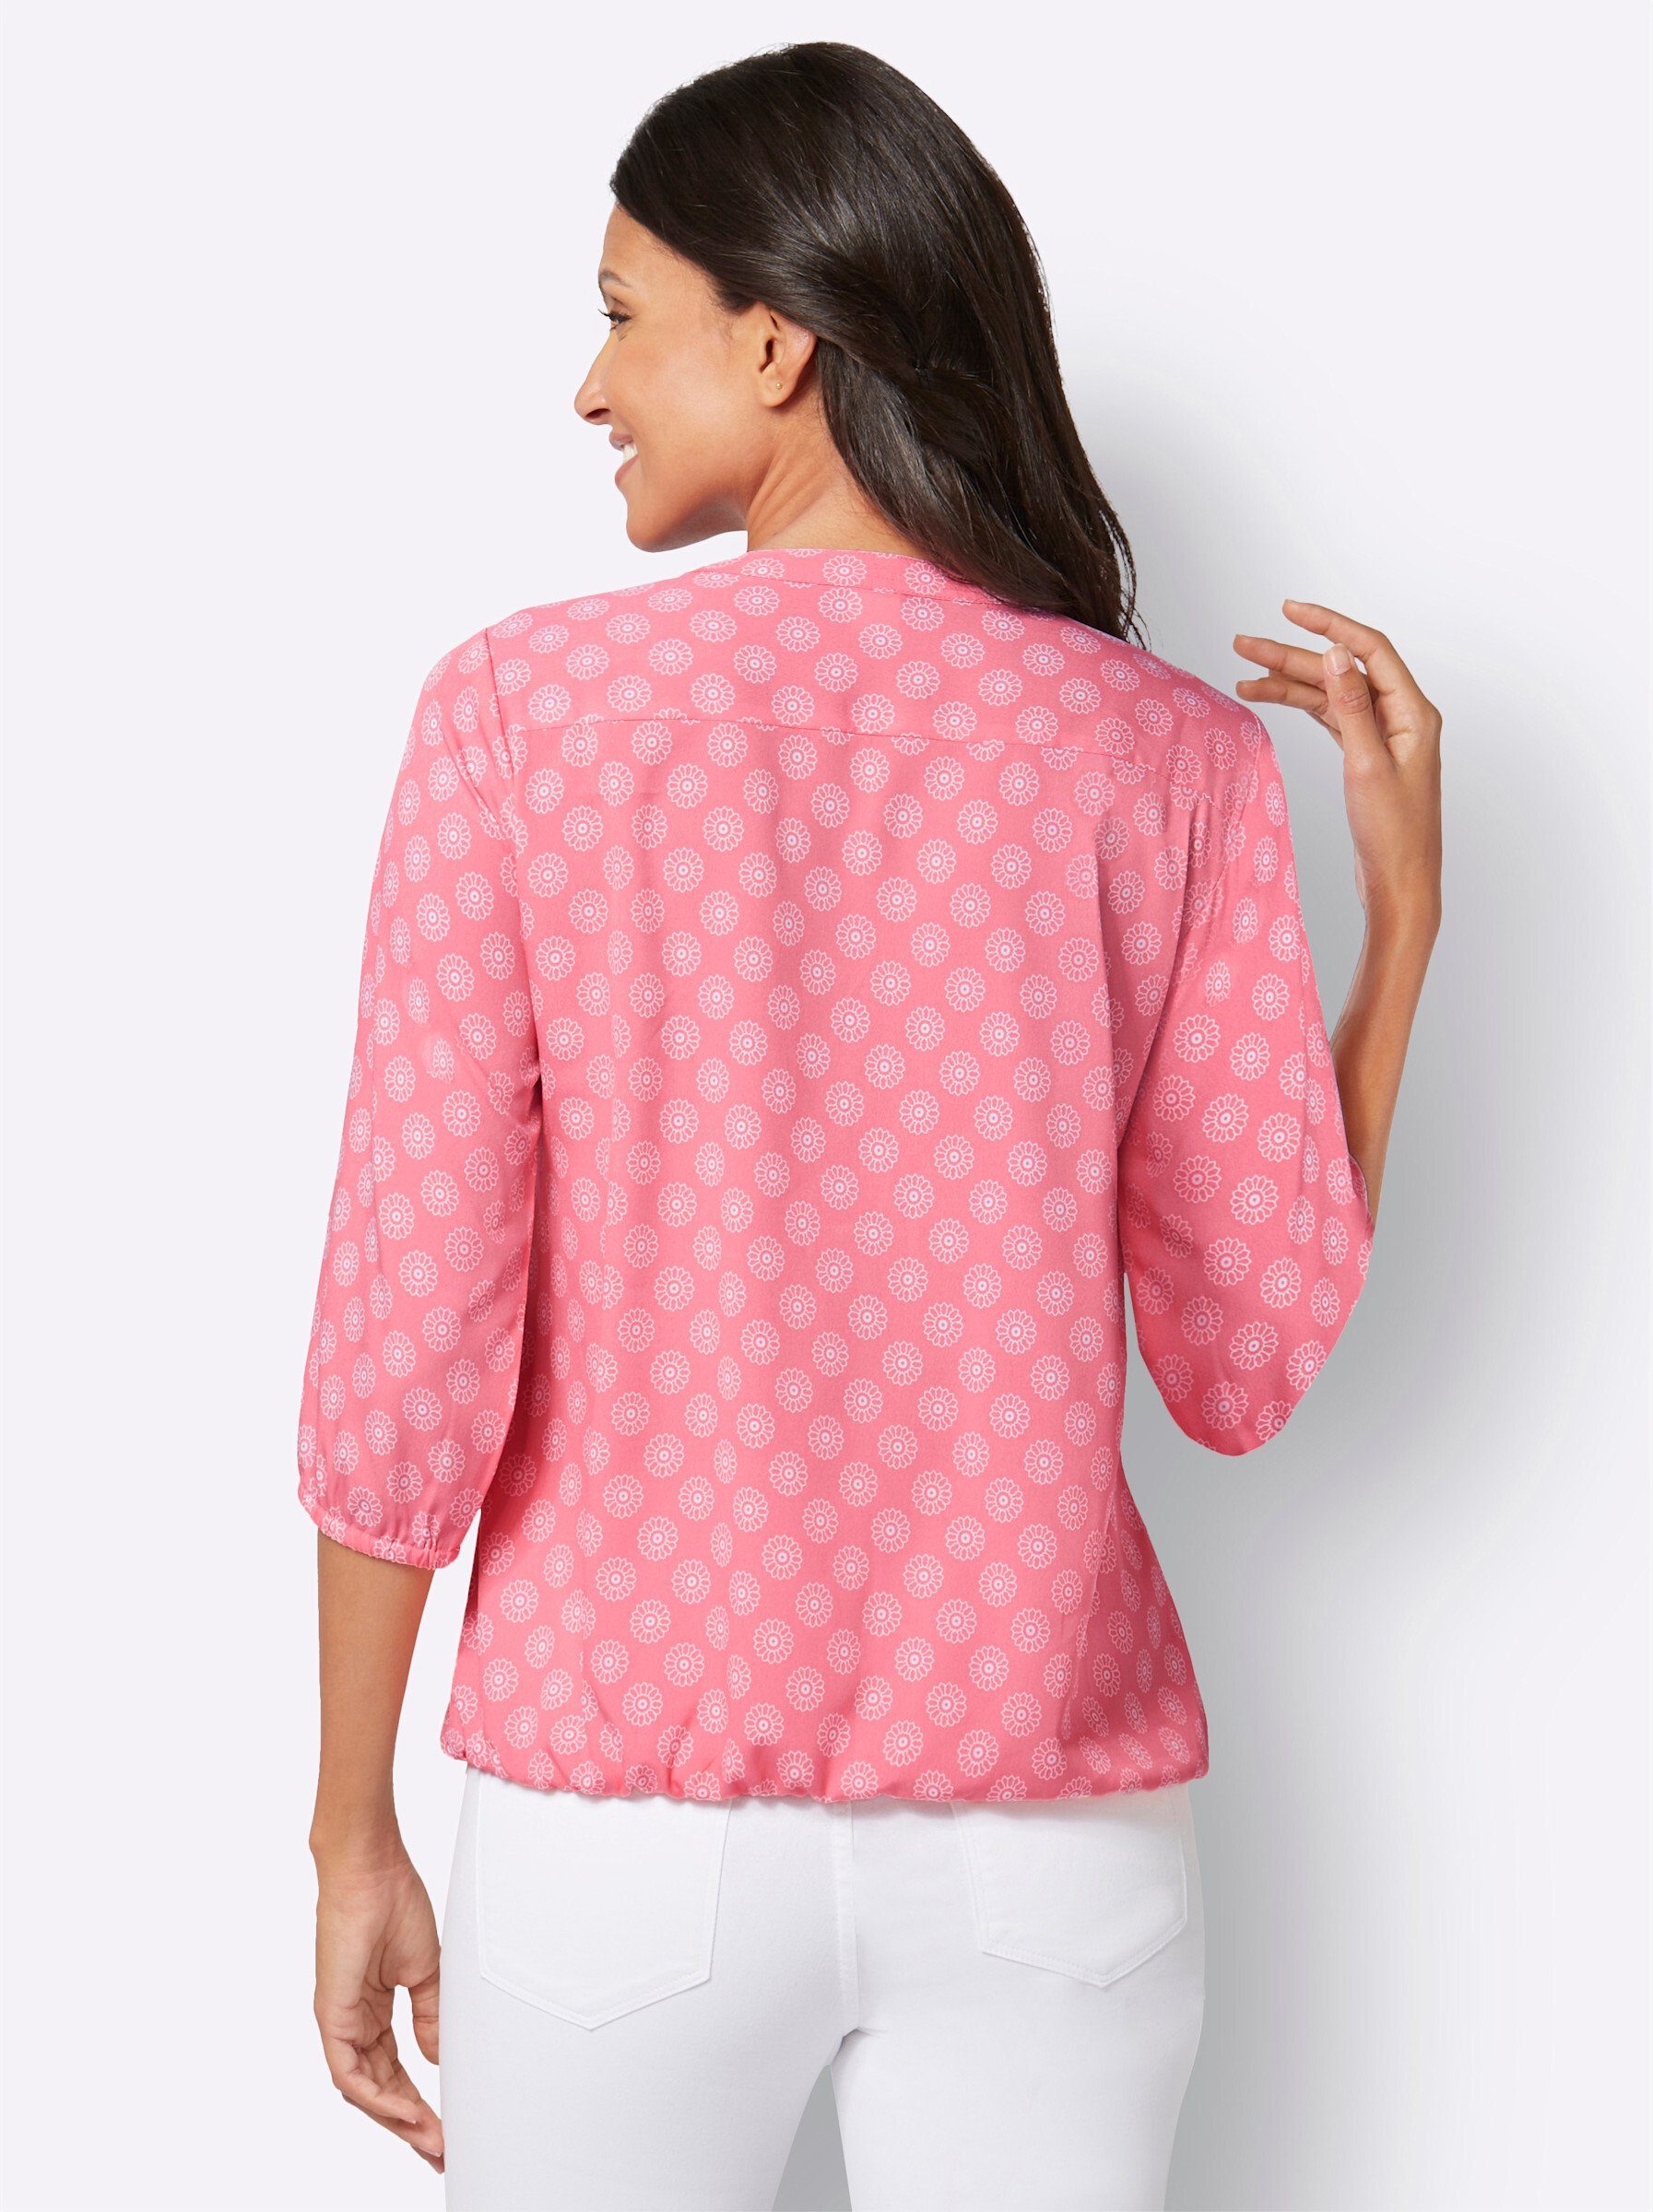 Klassische Bluse an! Sieh flamingo-ecru-bedruckt